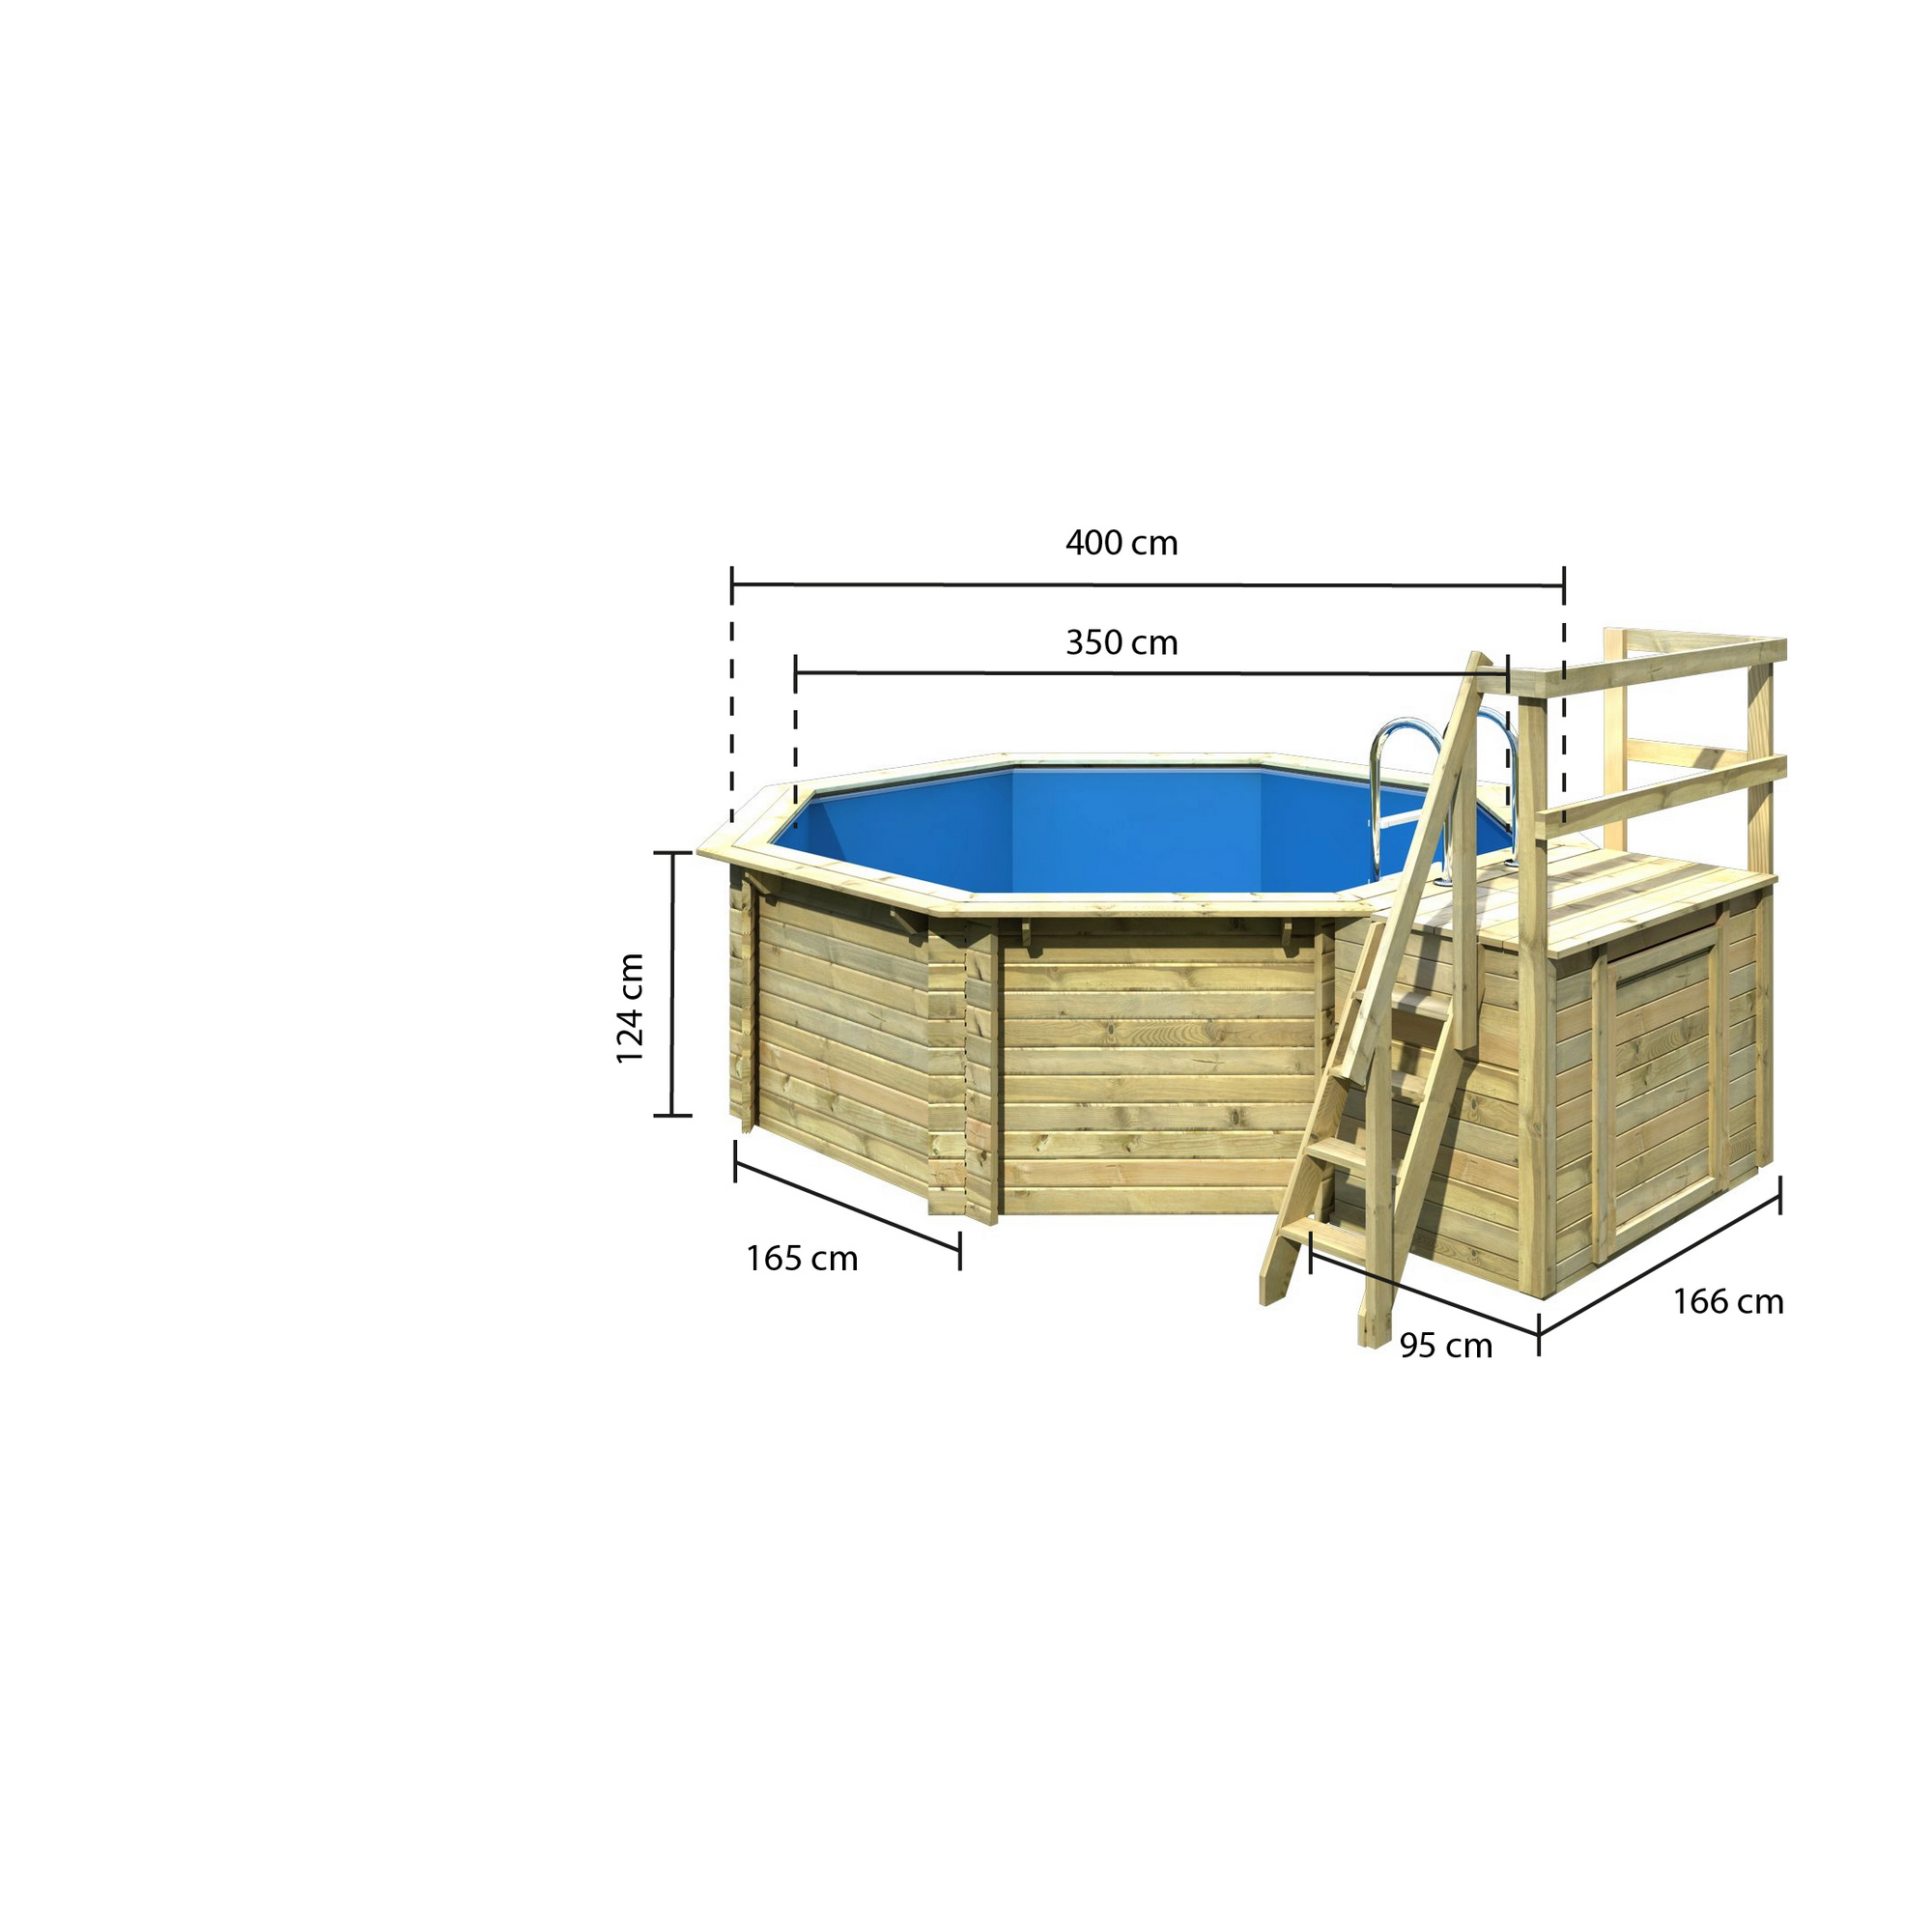 Massivholzpool-Set 'Modell 1 B' 400 x 400 x 124 cm mit Sonnendeck und Tiefbeckenleiter + product picture